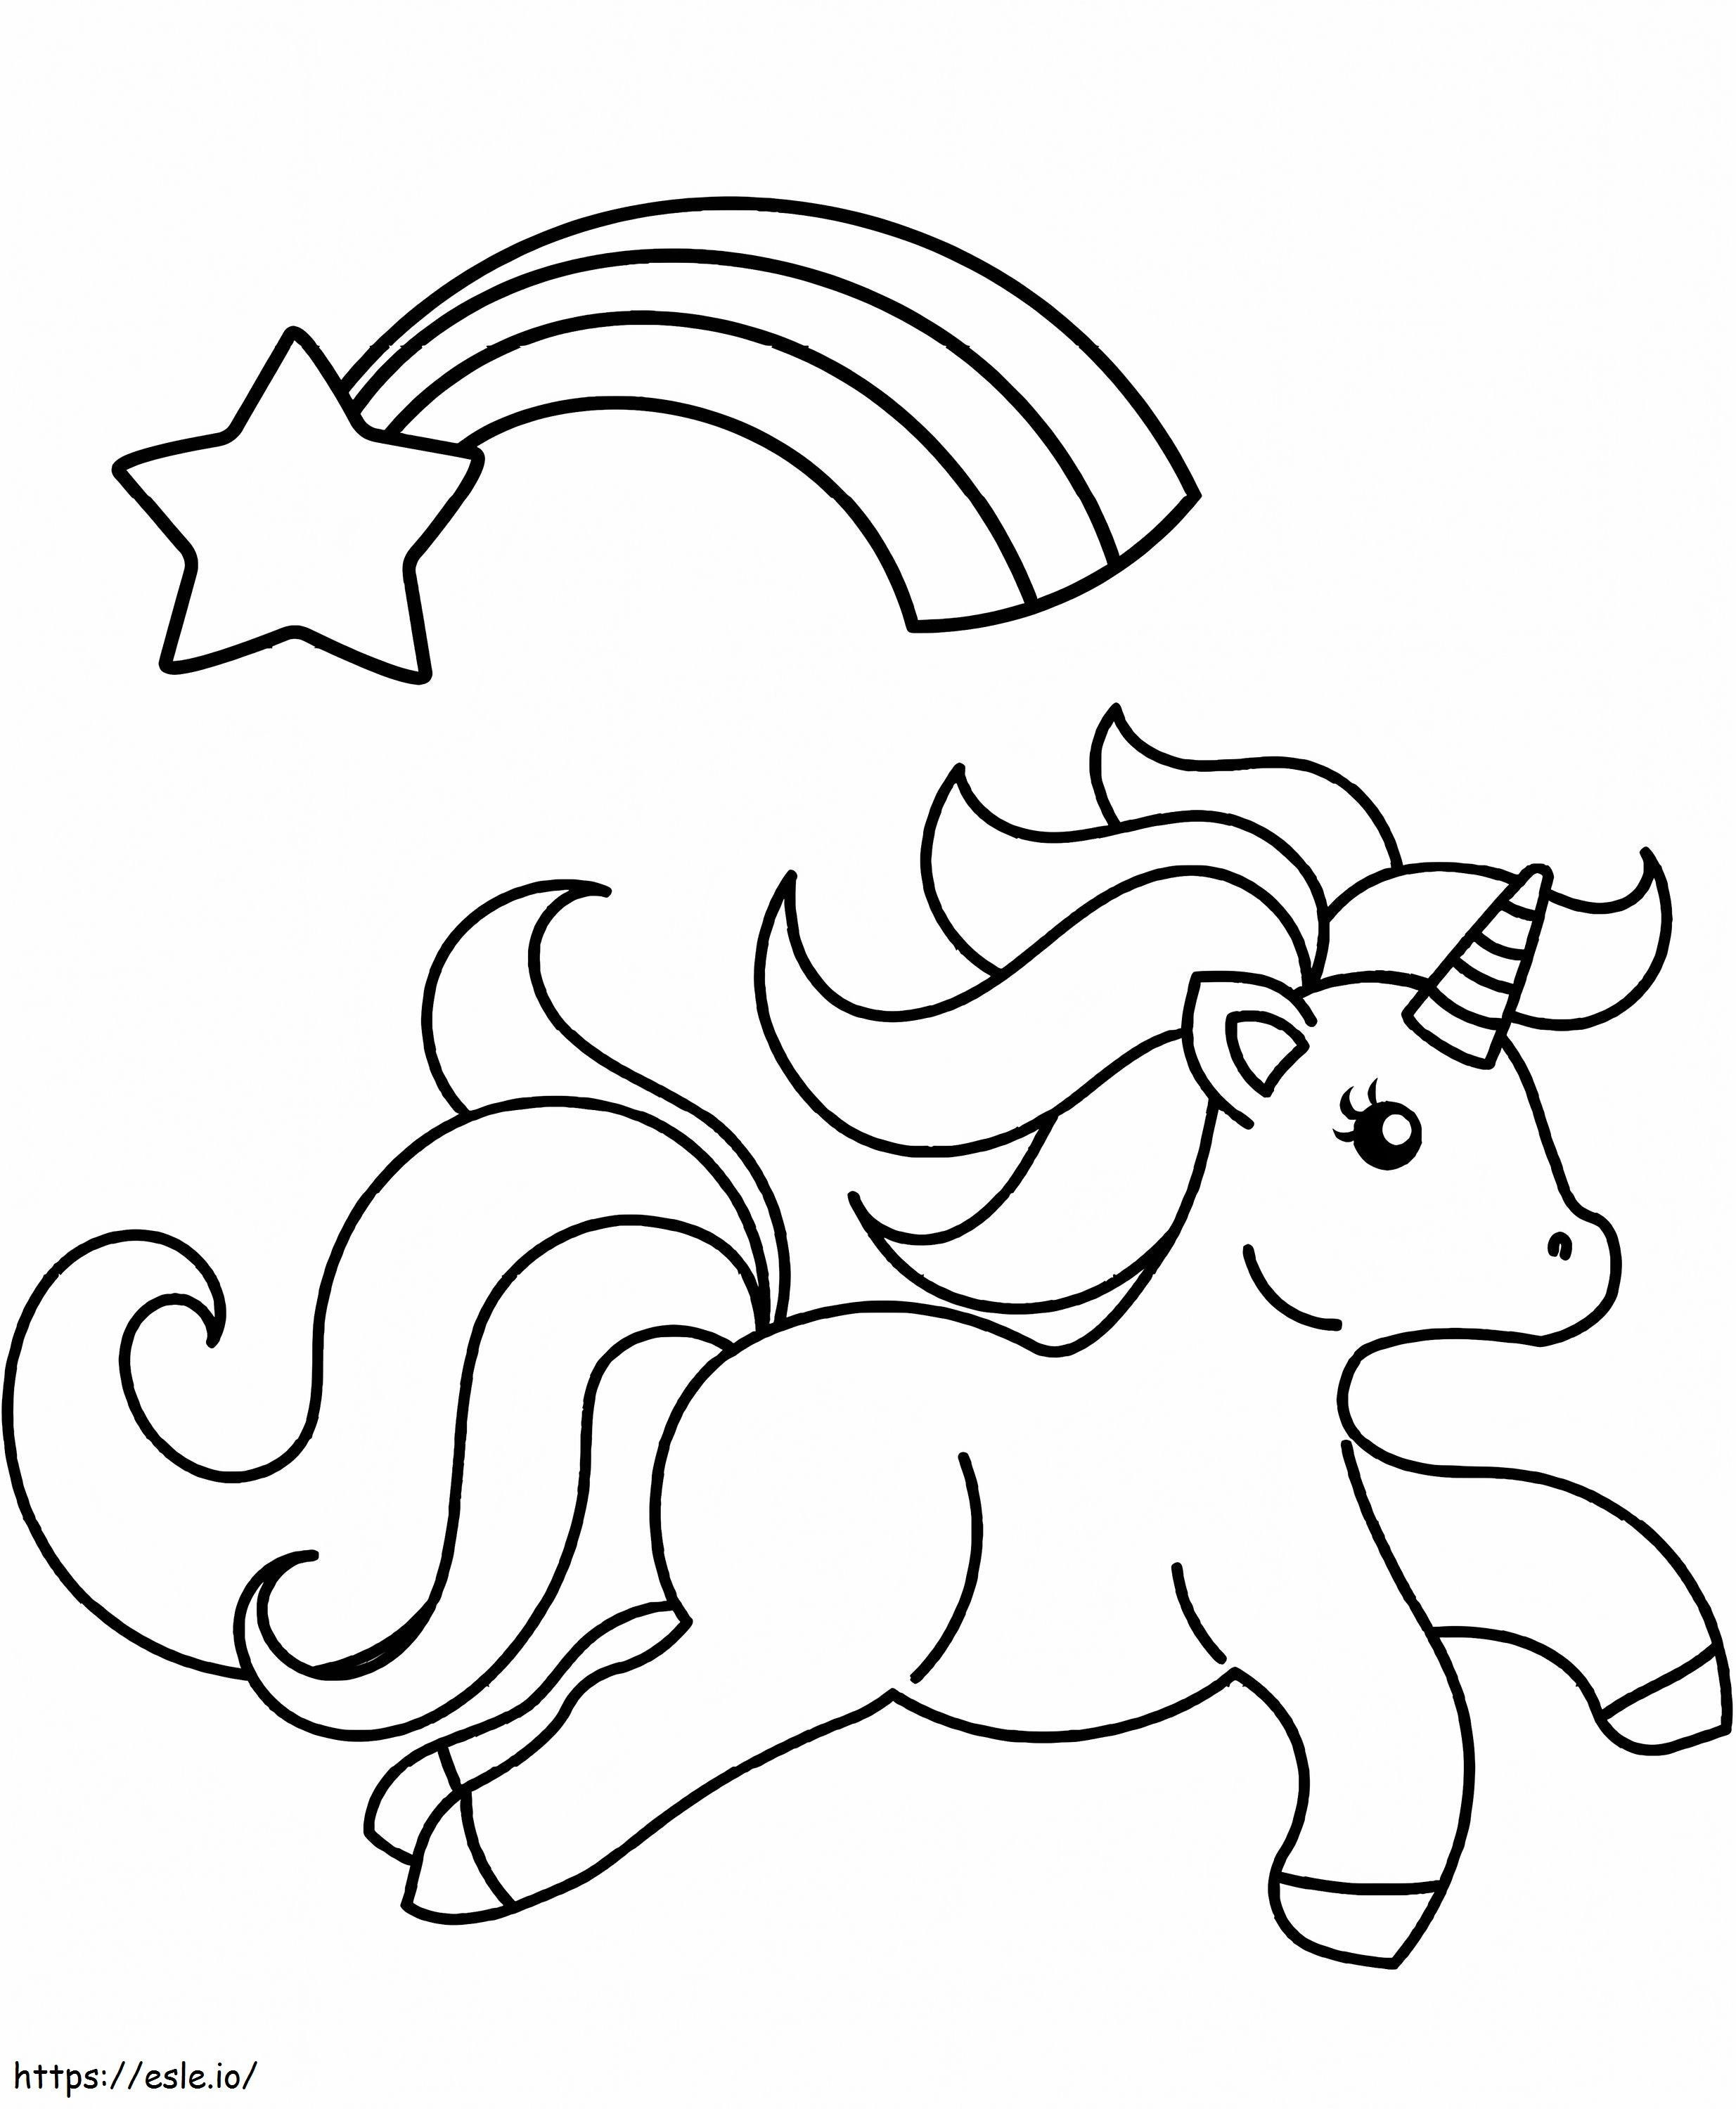 1564449032 Unicorno con stella cadente A4 da colorare